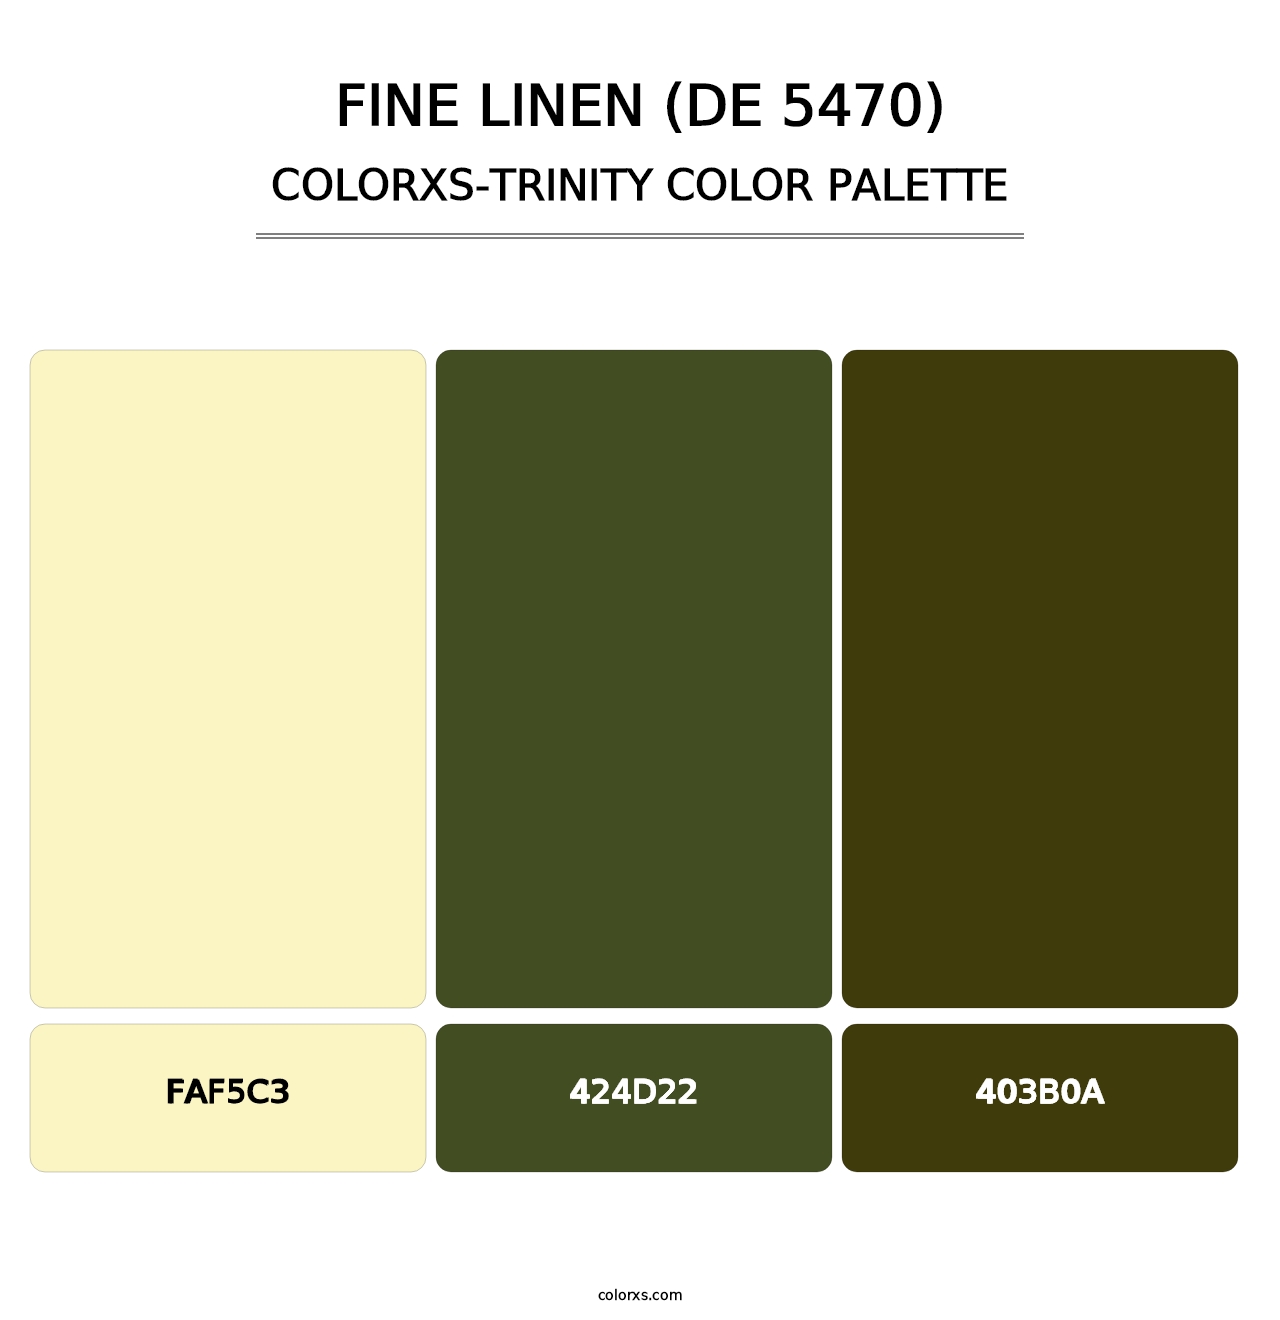 Fine Linen (DE 5470) - Colorxs Trinity Palette